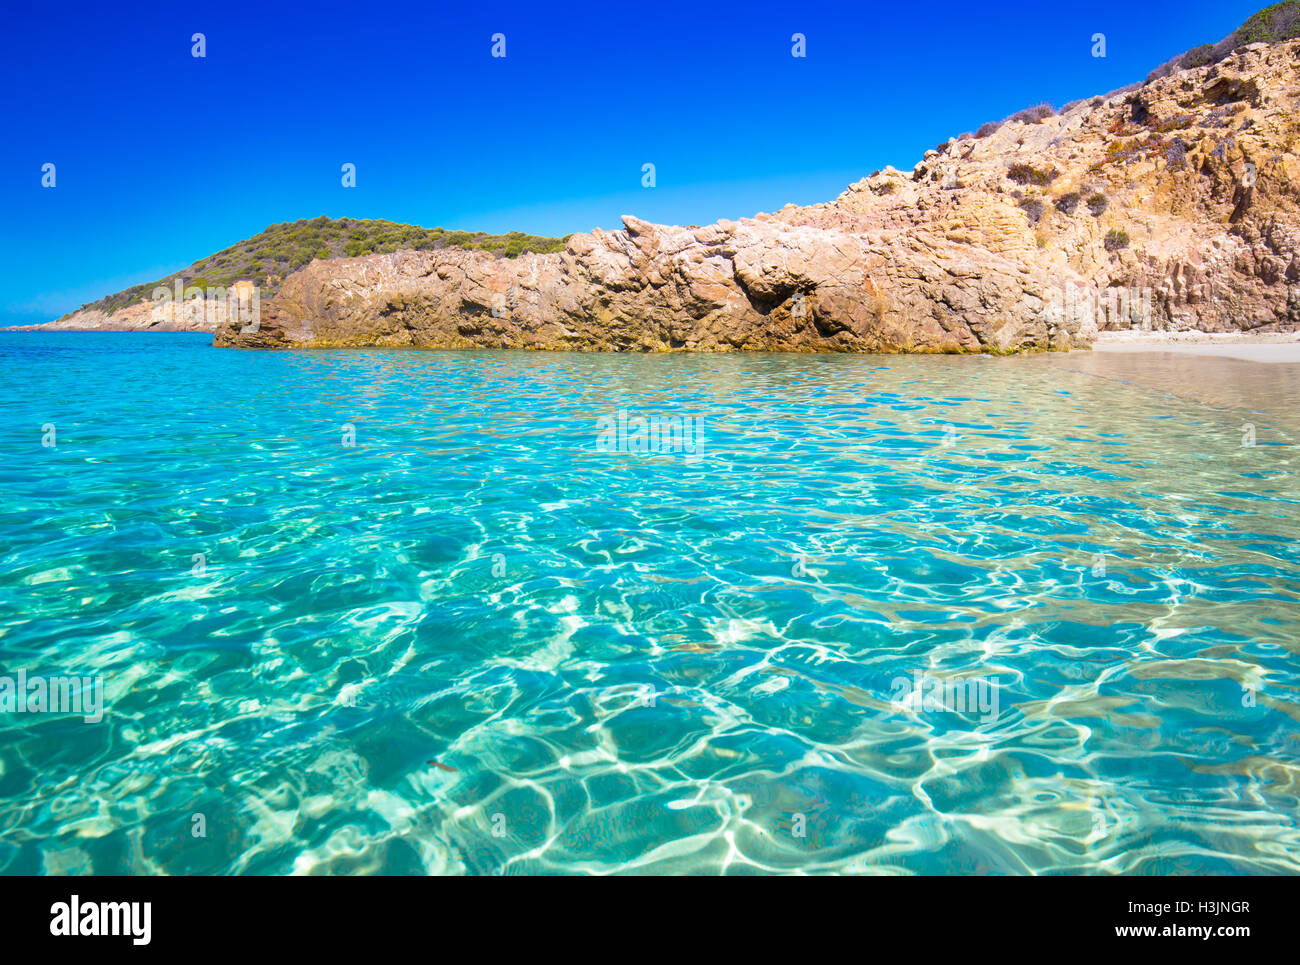 Schöner Sandstrand mit Felsen und Tourquise klares Wasser in der Nähe von Cargese, Korsika, Frankreich, Europa. Stockfoto